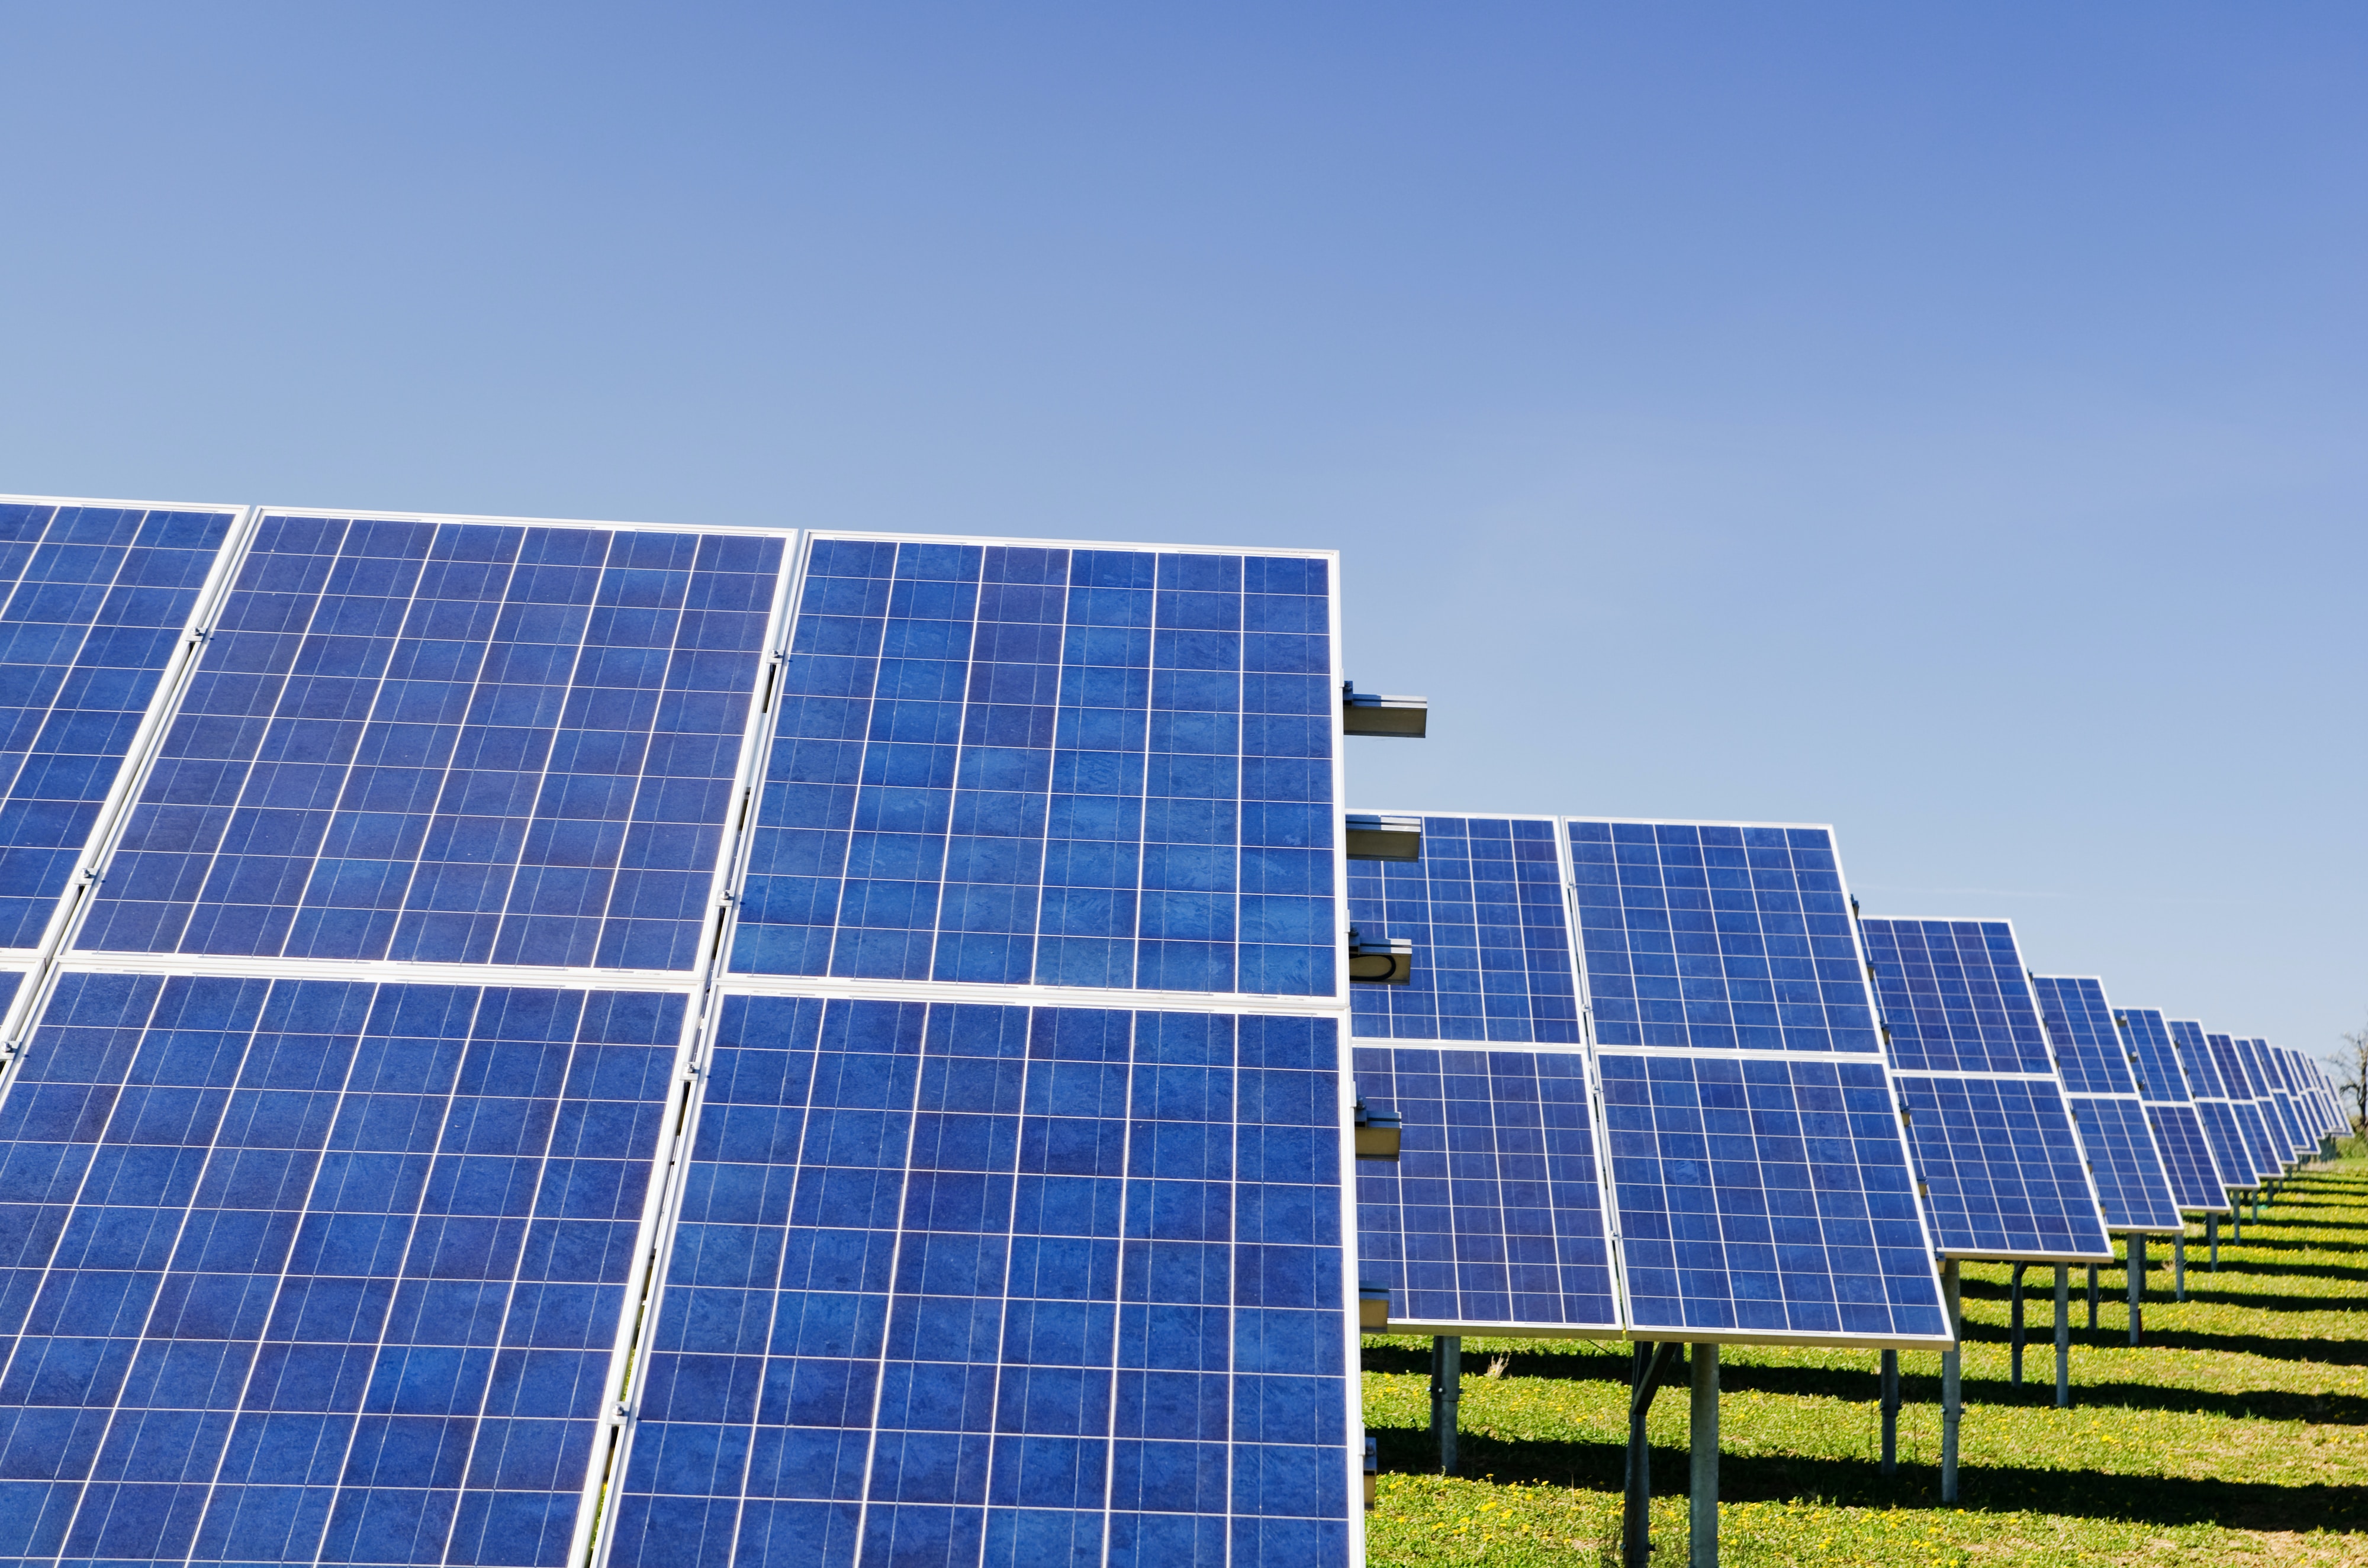 fermes solaires : source d'innovation technologique